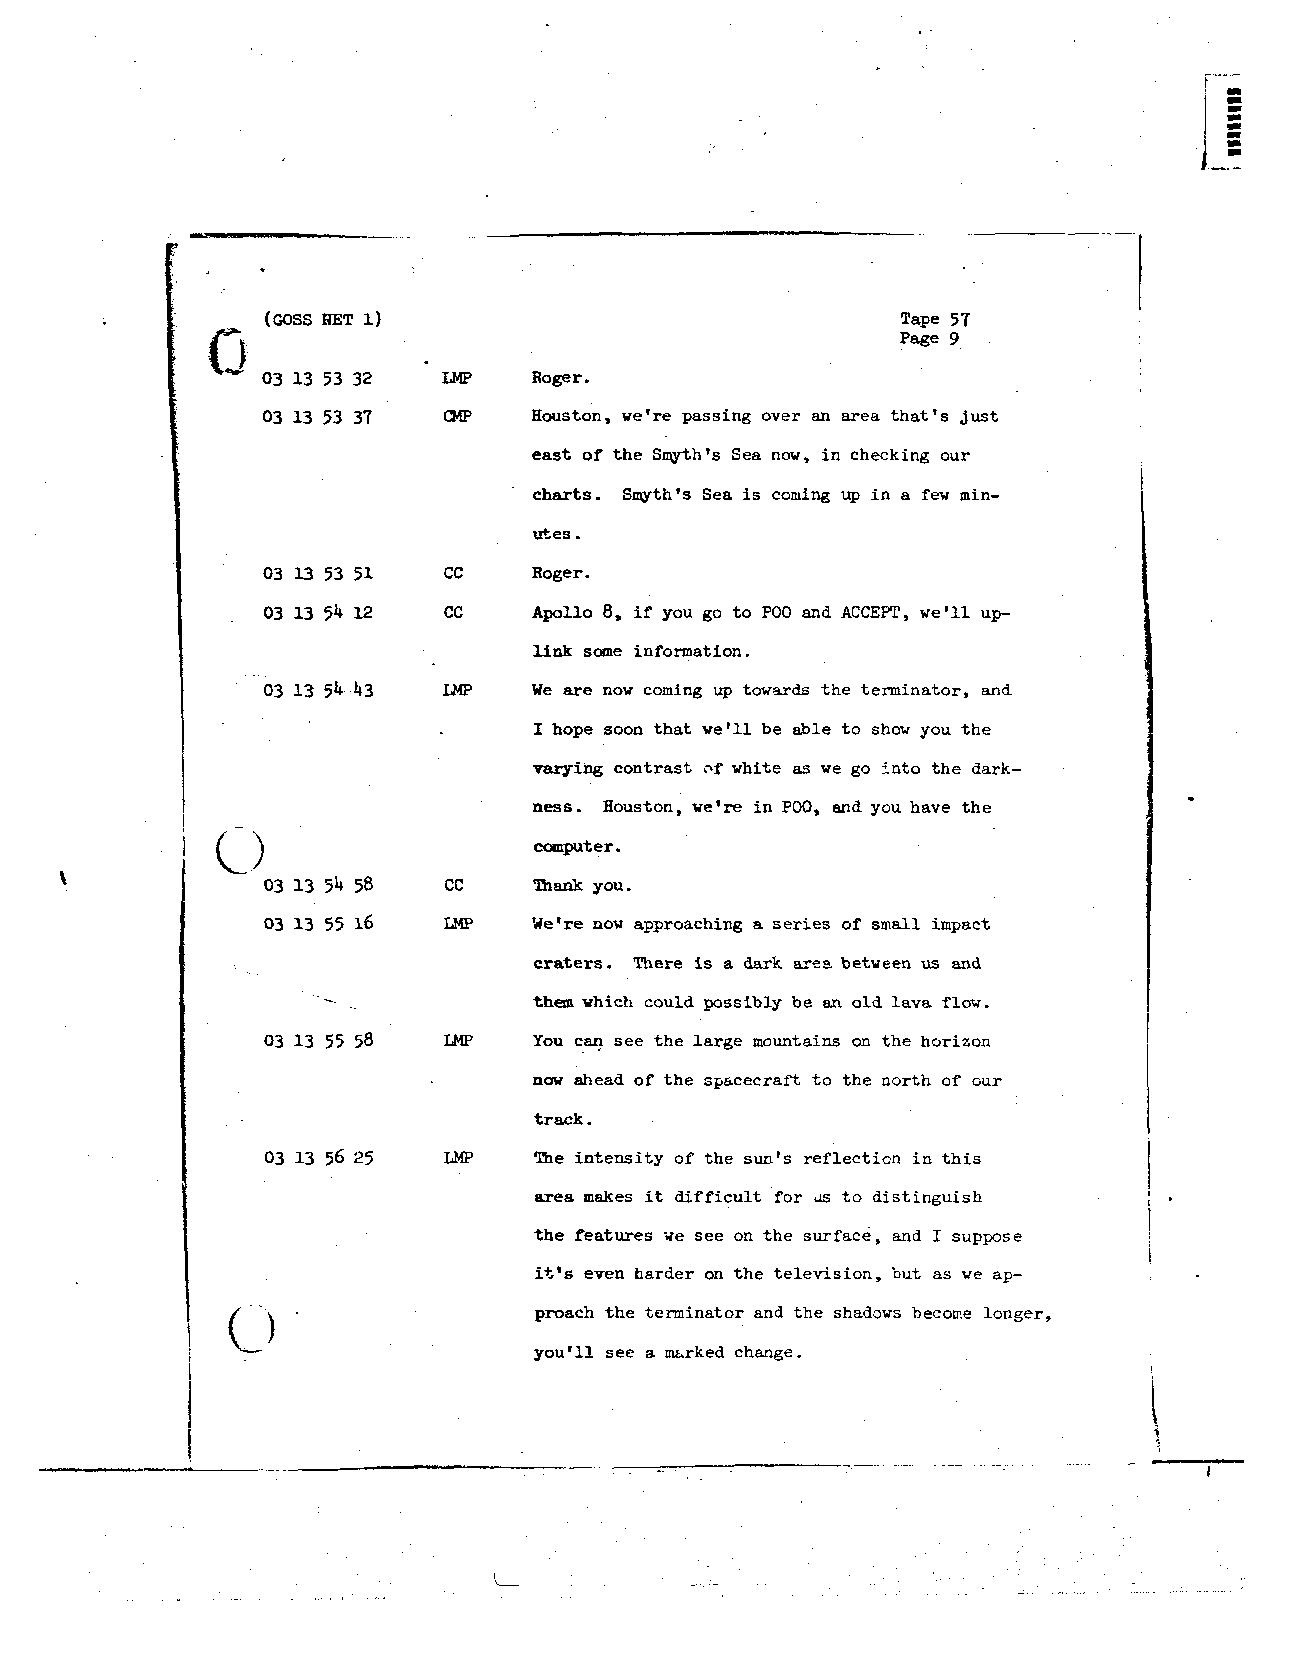 Page 458 of Apollo 8’s original transcript